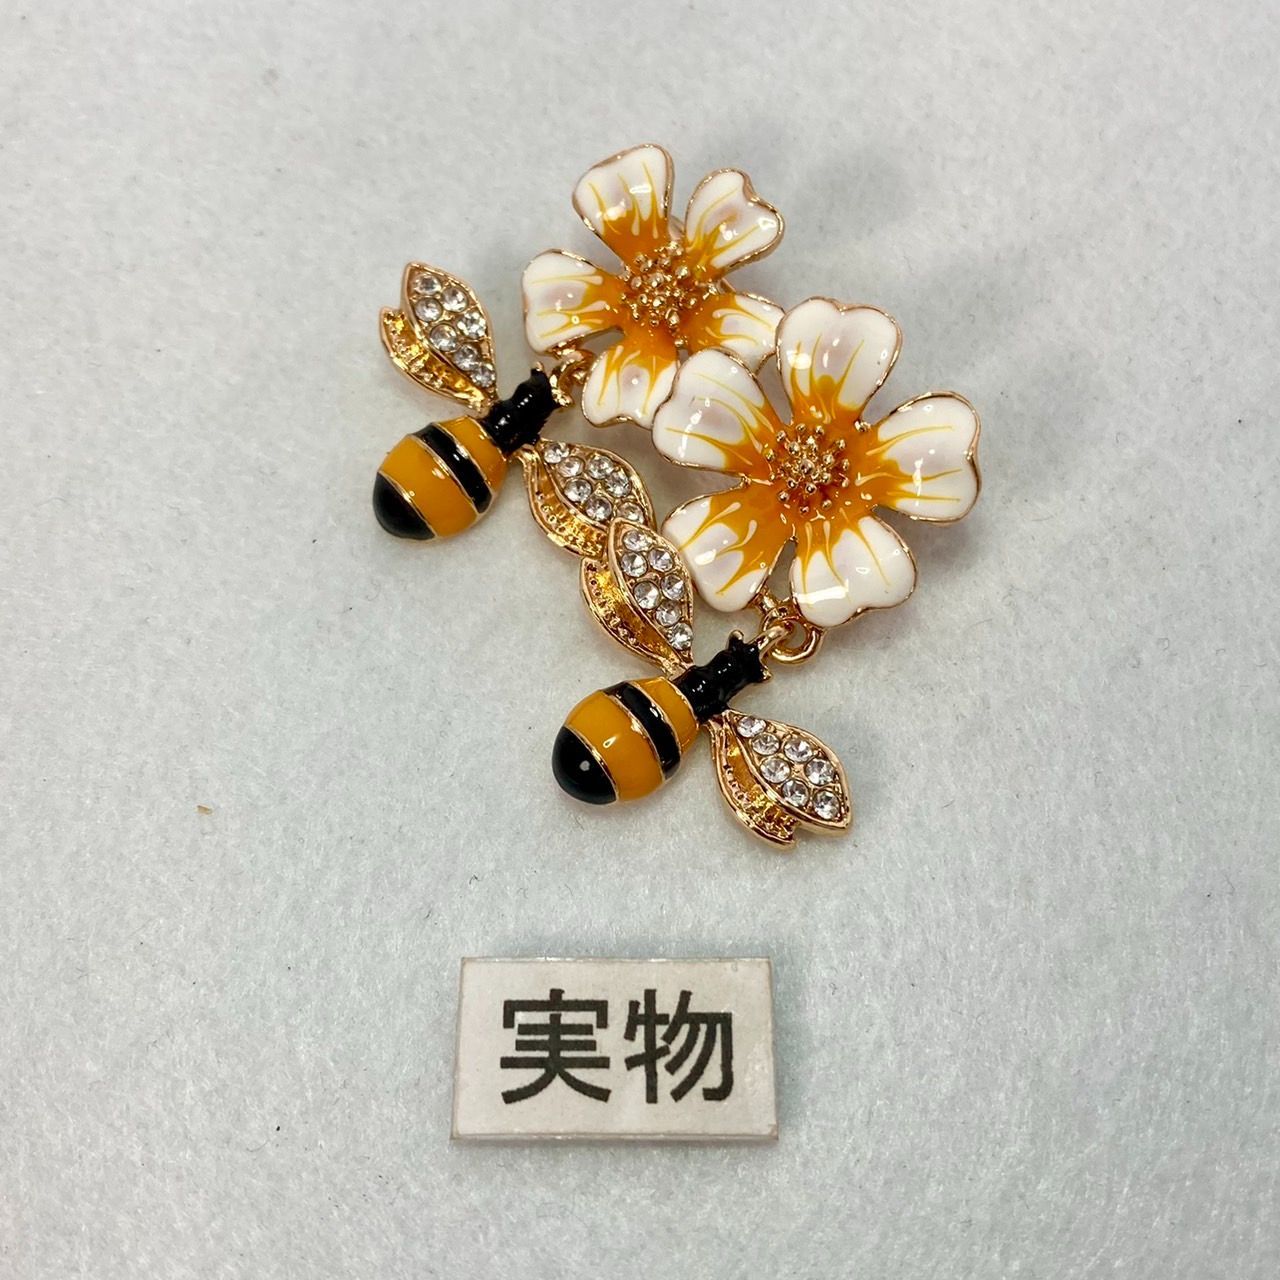 ミツバチ ブローチ フラワー 蜂さん 白い花 かわいい ユニーク